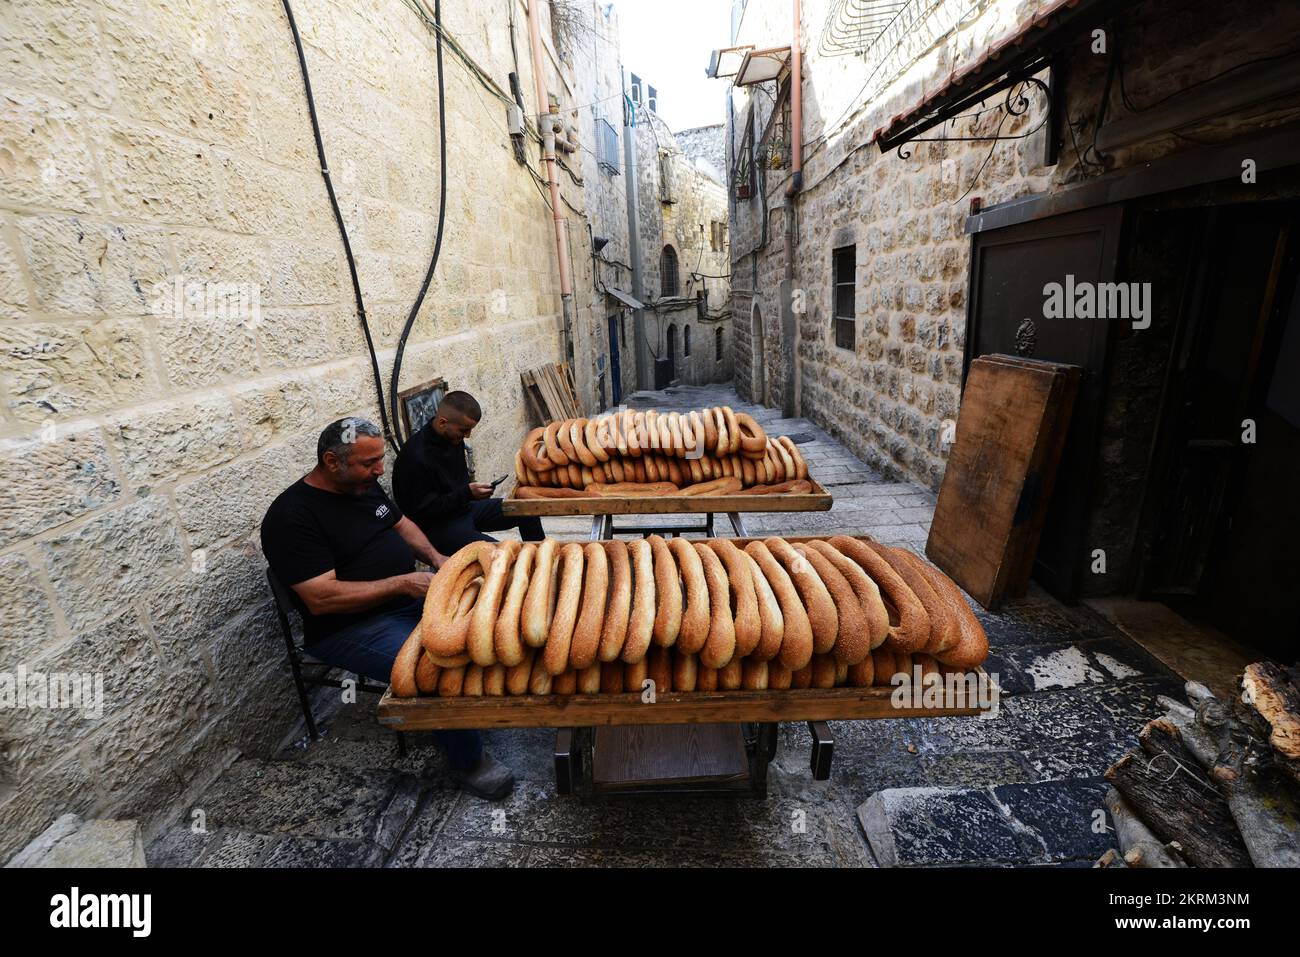 Frisches Ka'ek Al-Quds: Sesambagelbrot, das in einem traditionellen Wagen zu verschiedenen Geschäften in der Altstadt von Jerusalem geliefert wird. Stockfoto